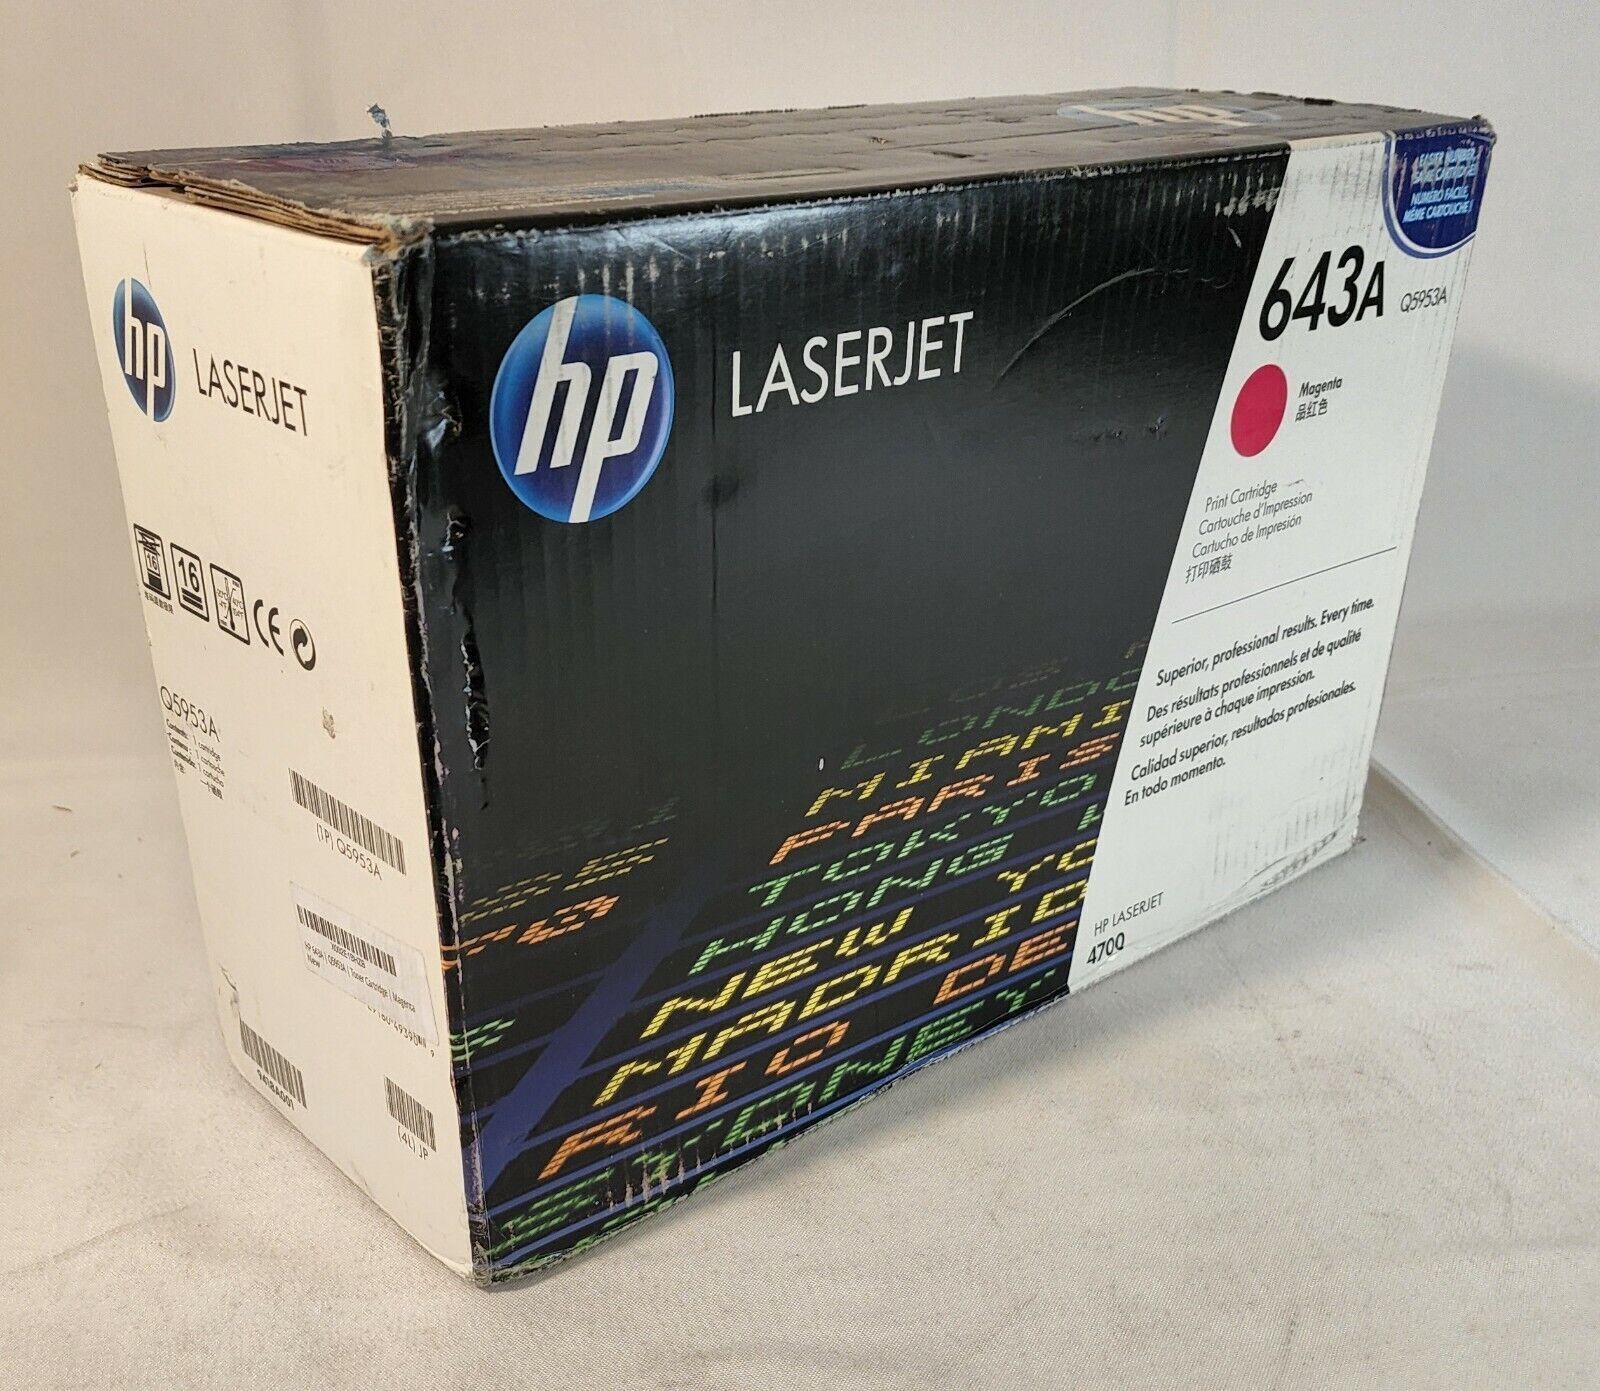 HP 643A LaserJet Toner Cartridge - Magenta (Q5953A)